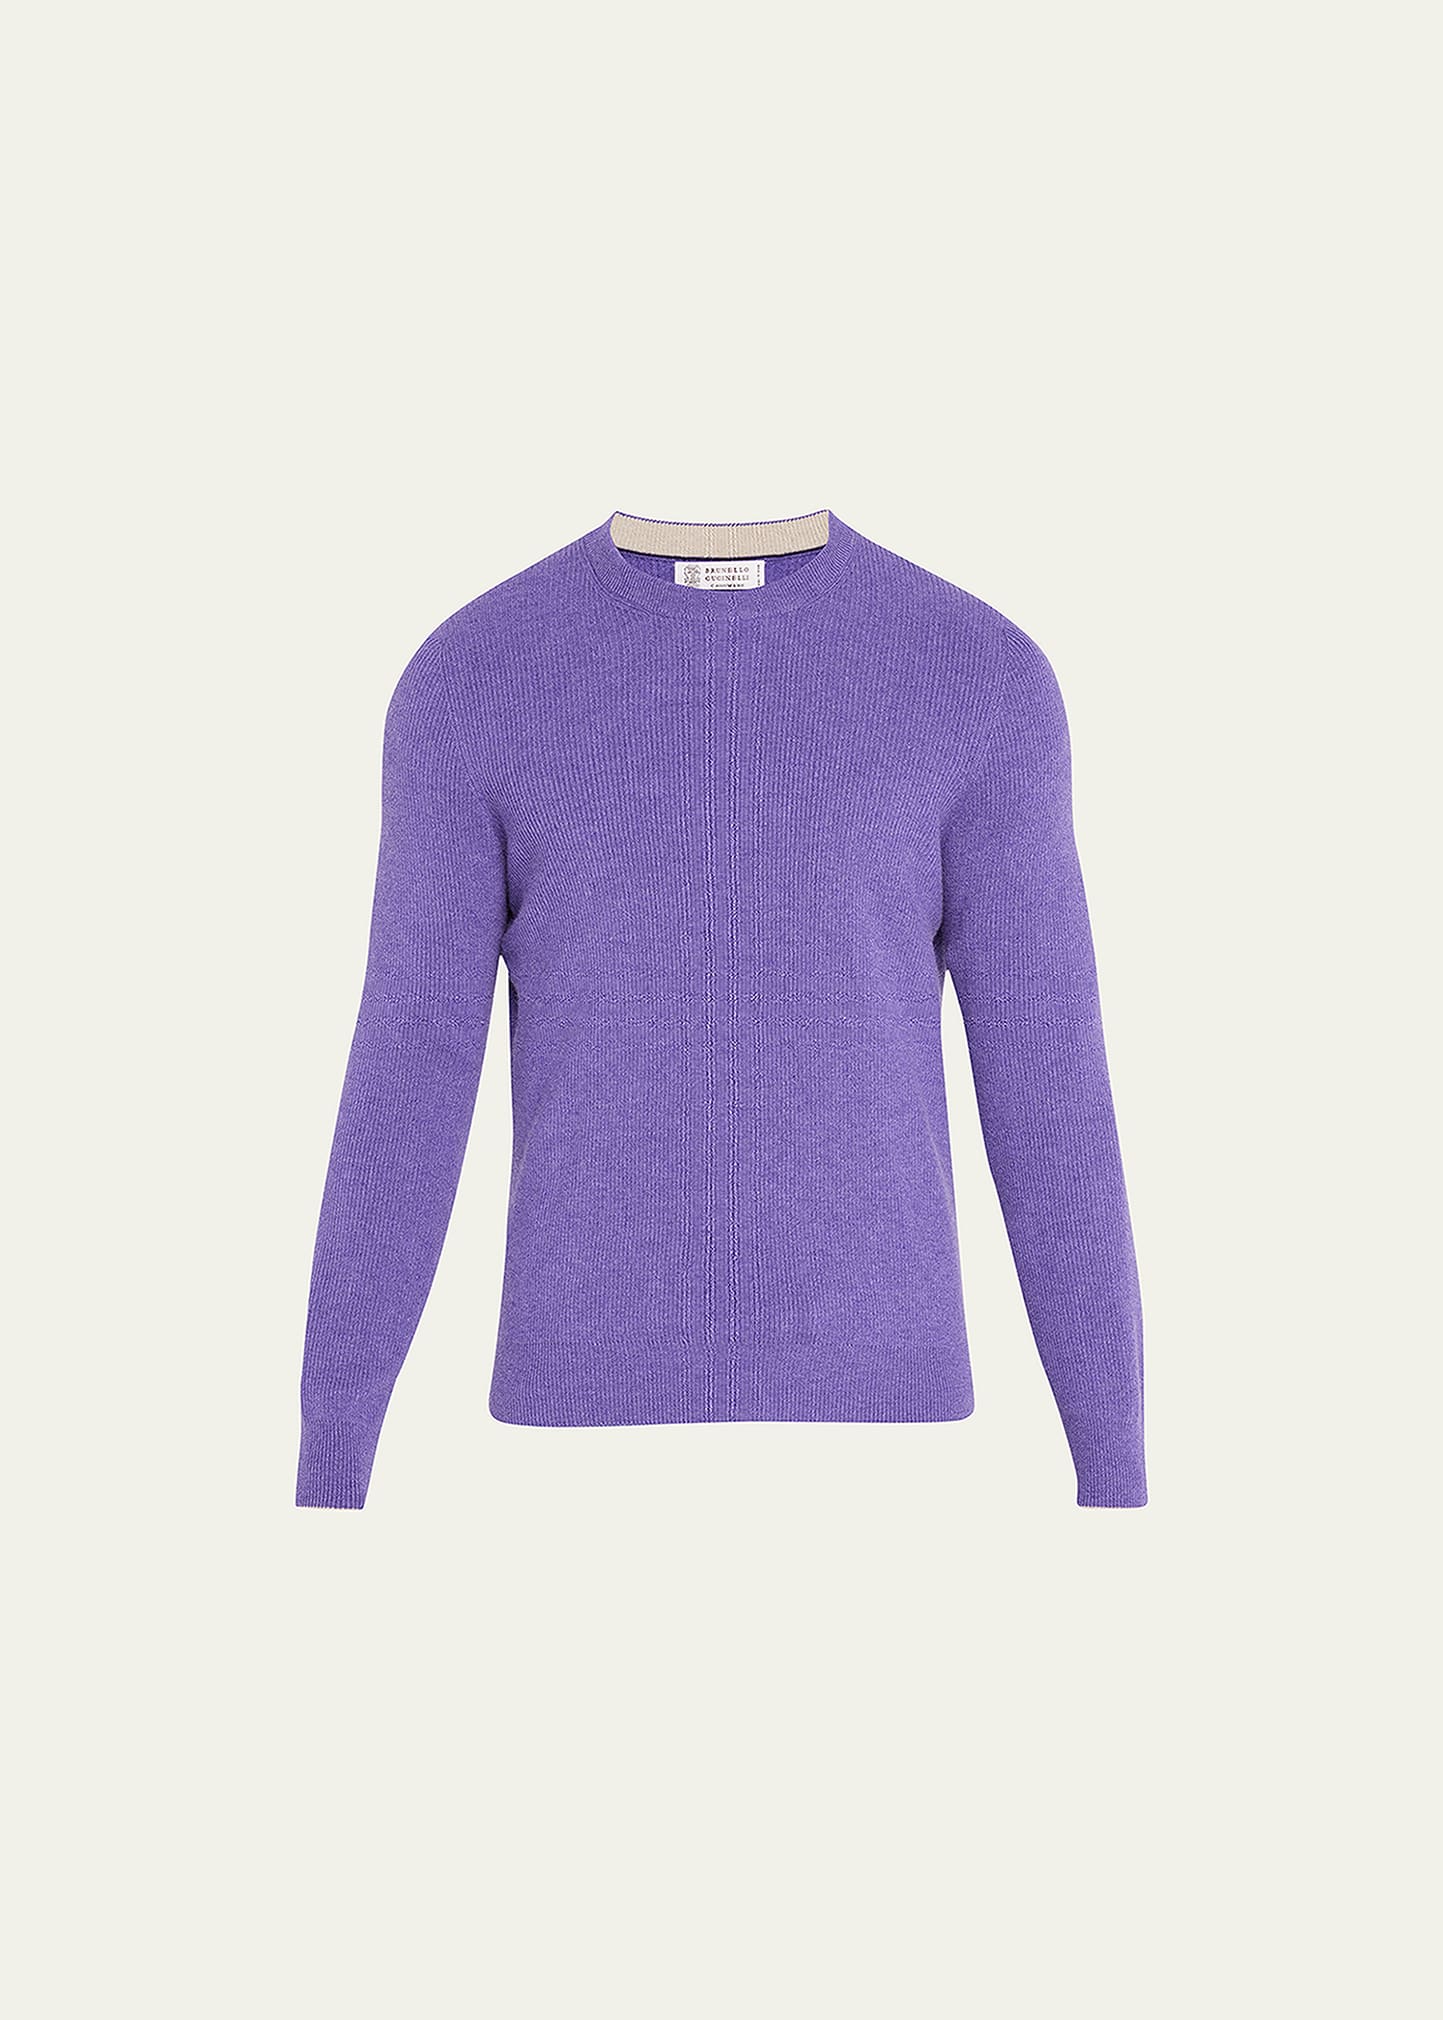 Brunello Cucinelli Men's Cashmere Rib-knit Crewneck Sweater In Violet